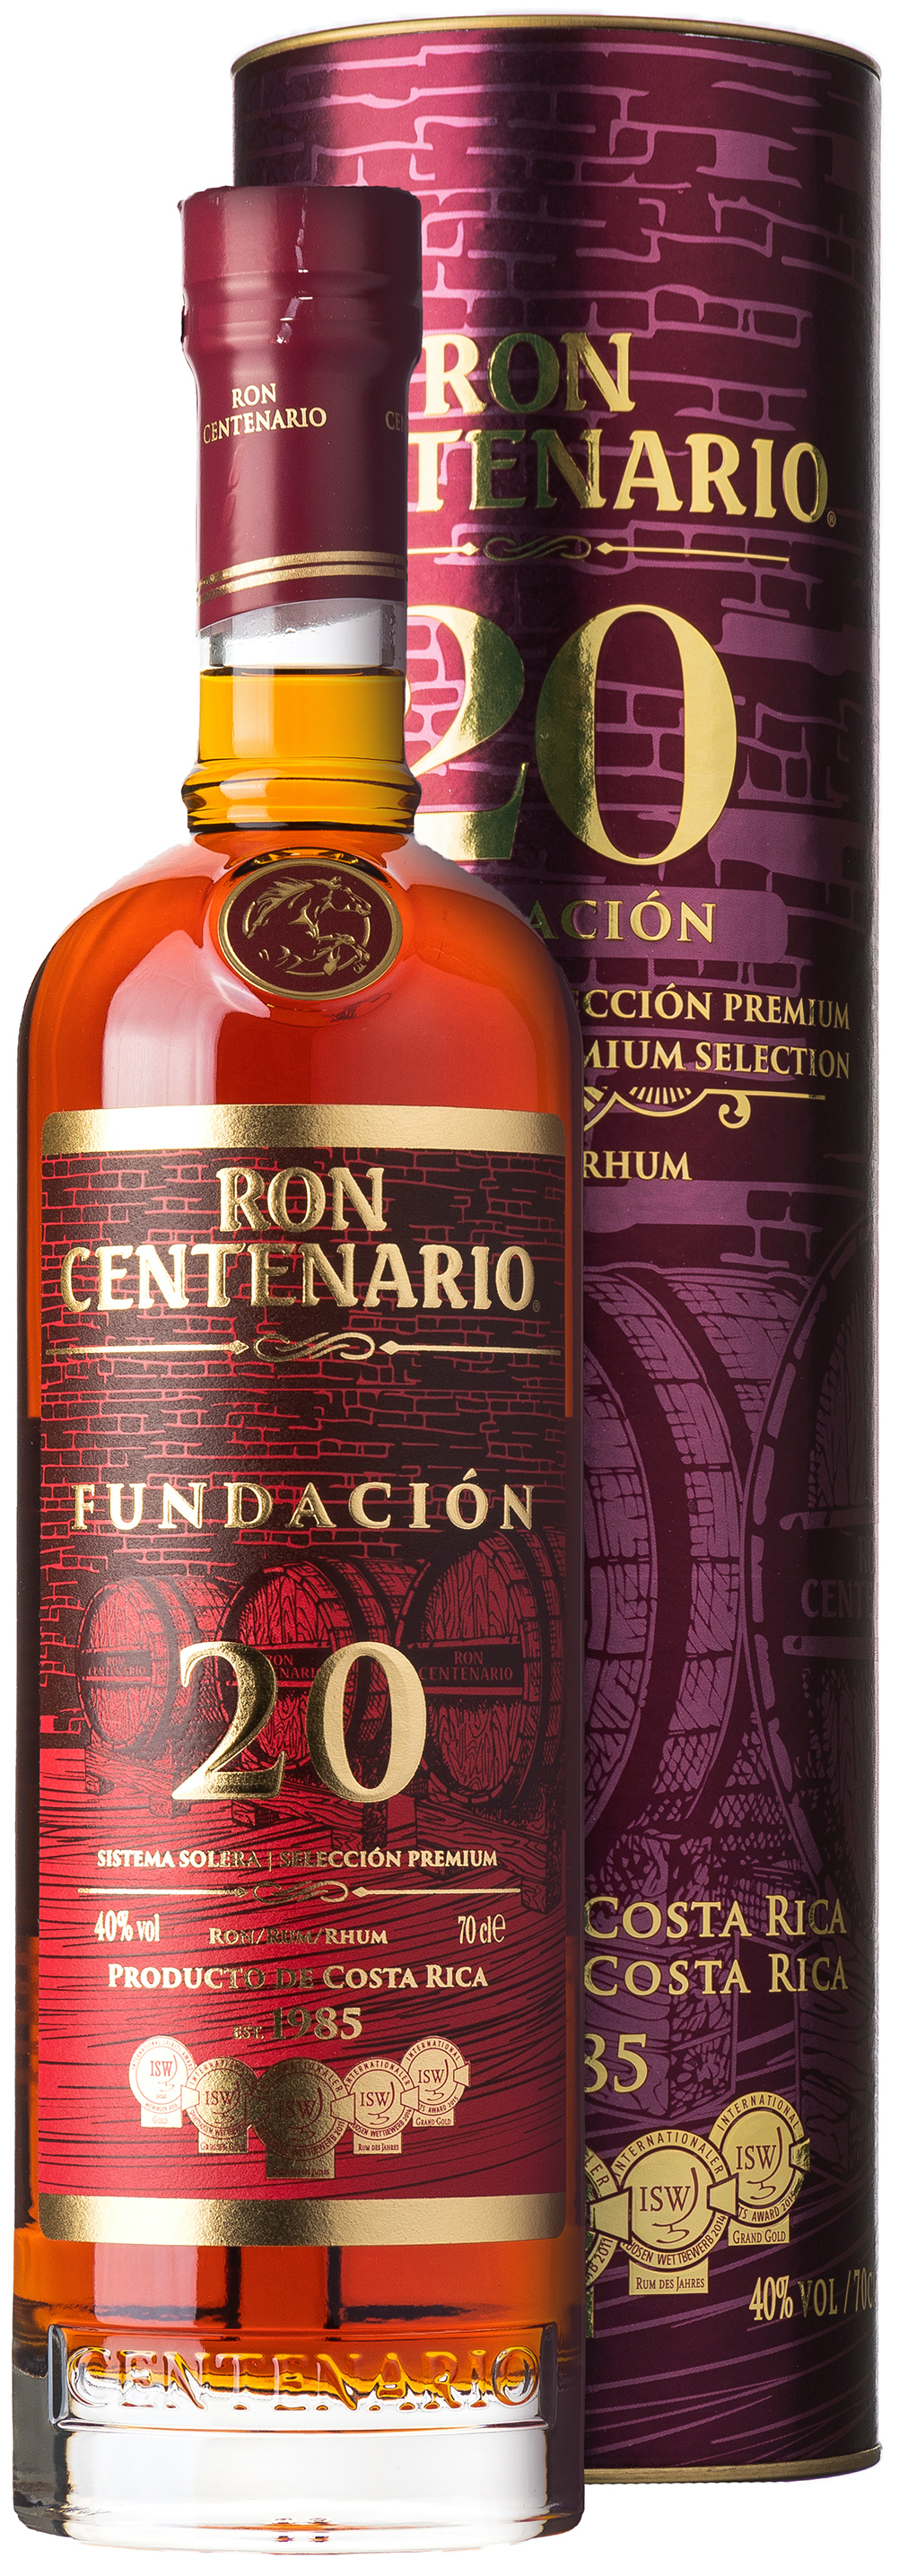 Ron Centenario Fundacion 20 Jahre 40% vol. 0,7L